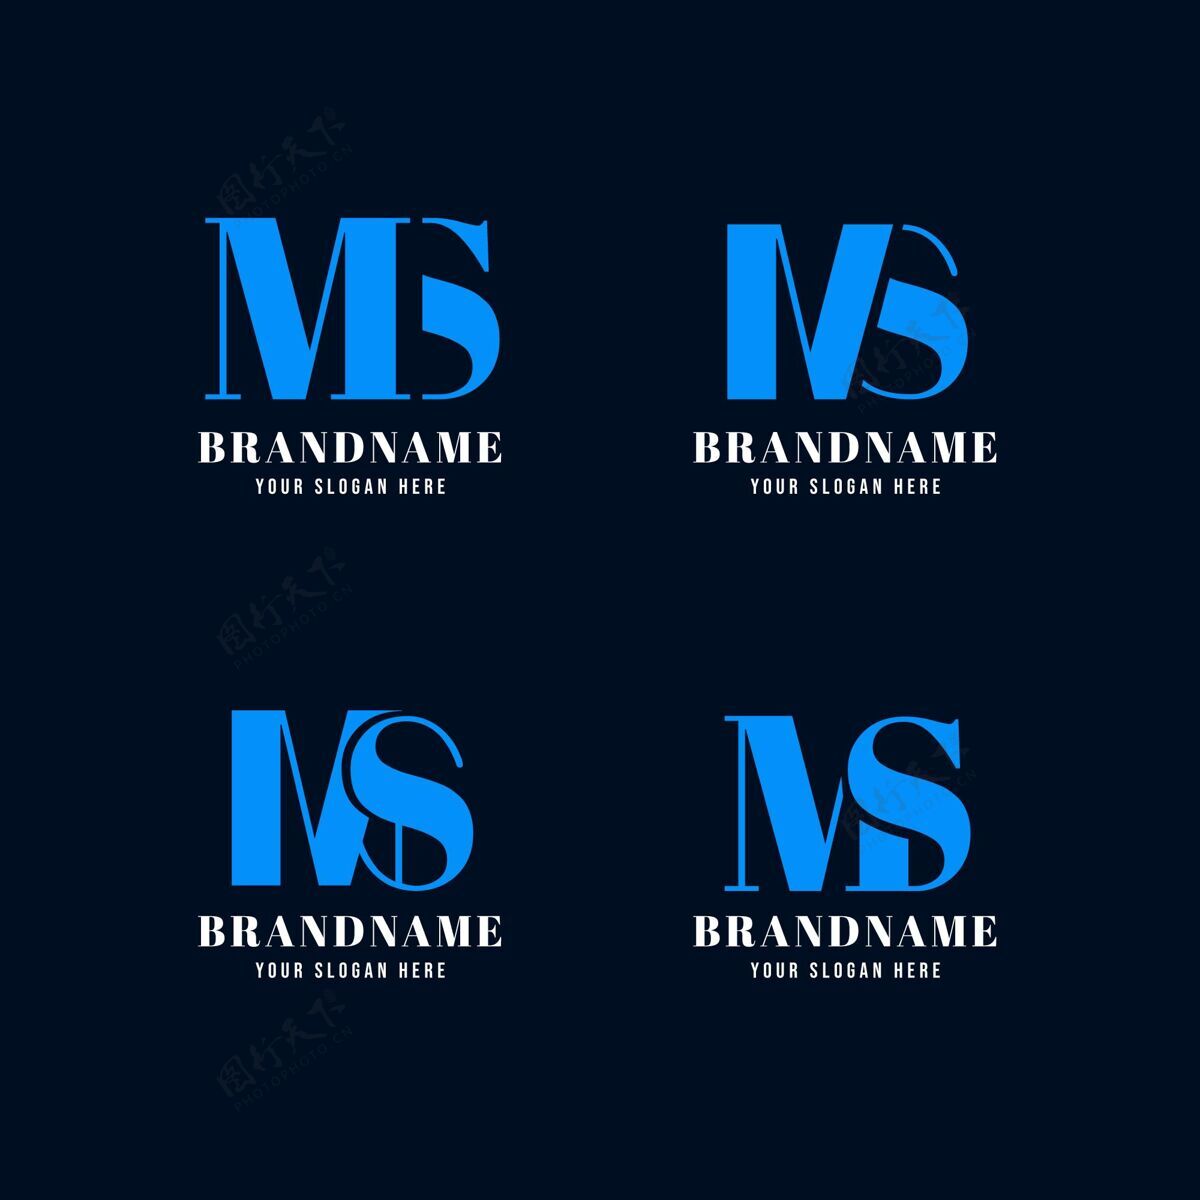 企业标识平面设计ms标志系列公司标识企业标识企业